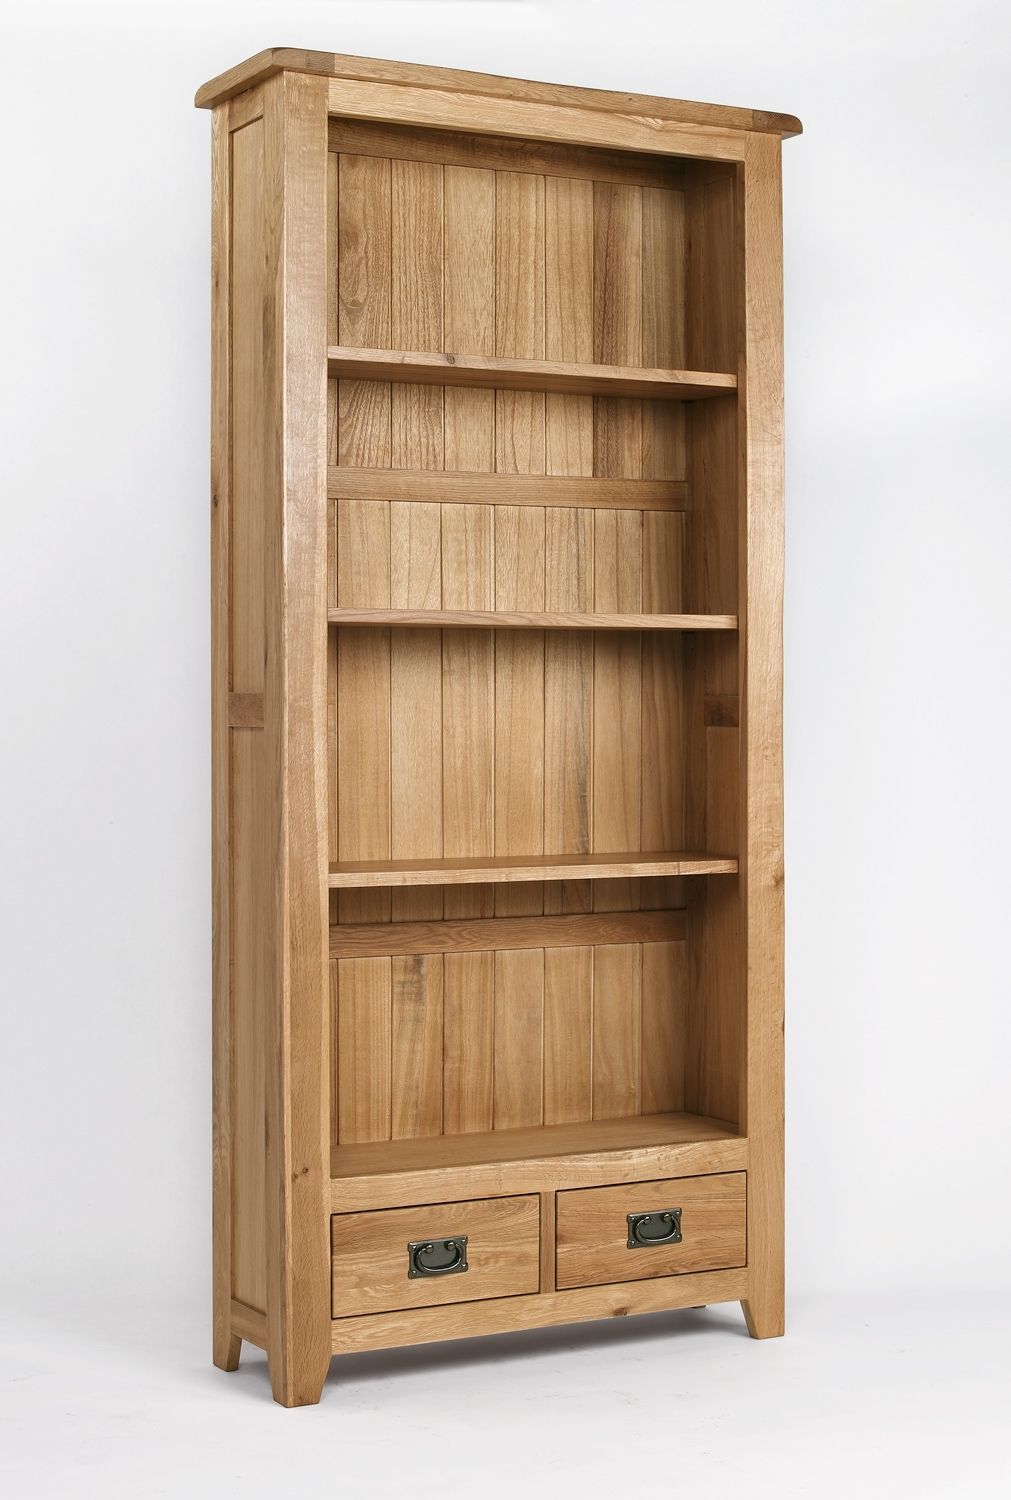 Wooden Bookshelves Idi Design Regarding Wooden Bookshelves (View 3 of 14)